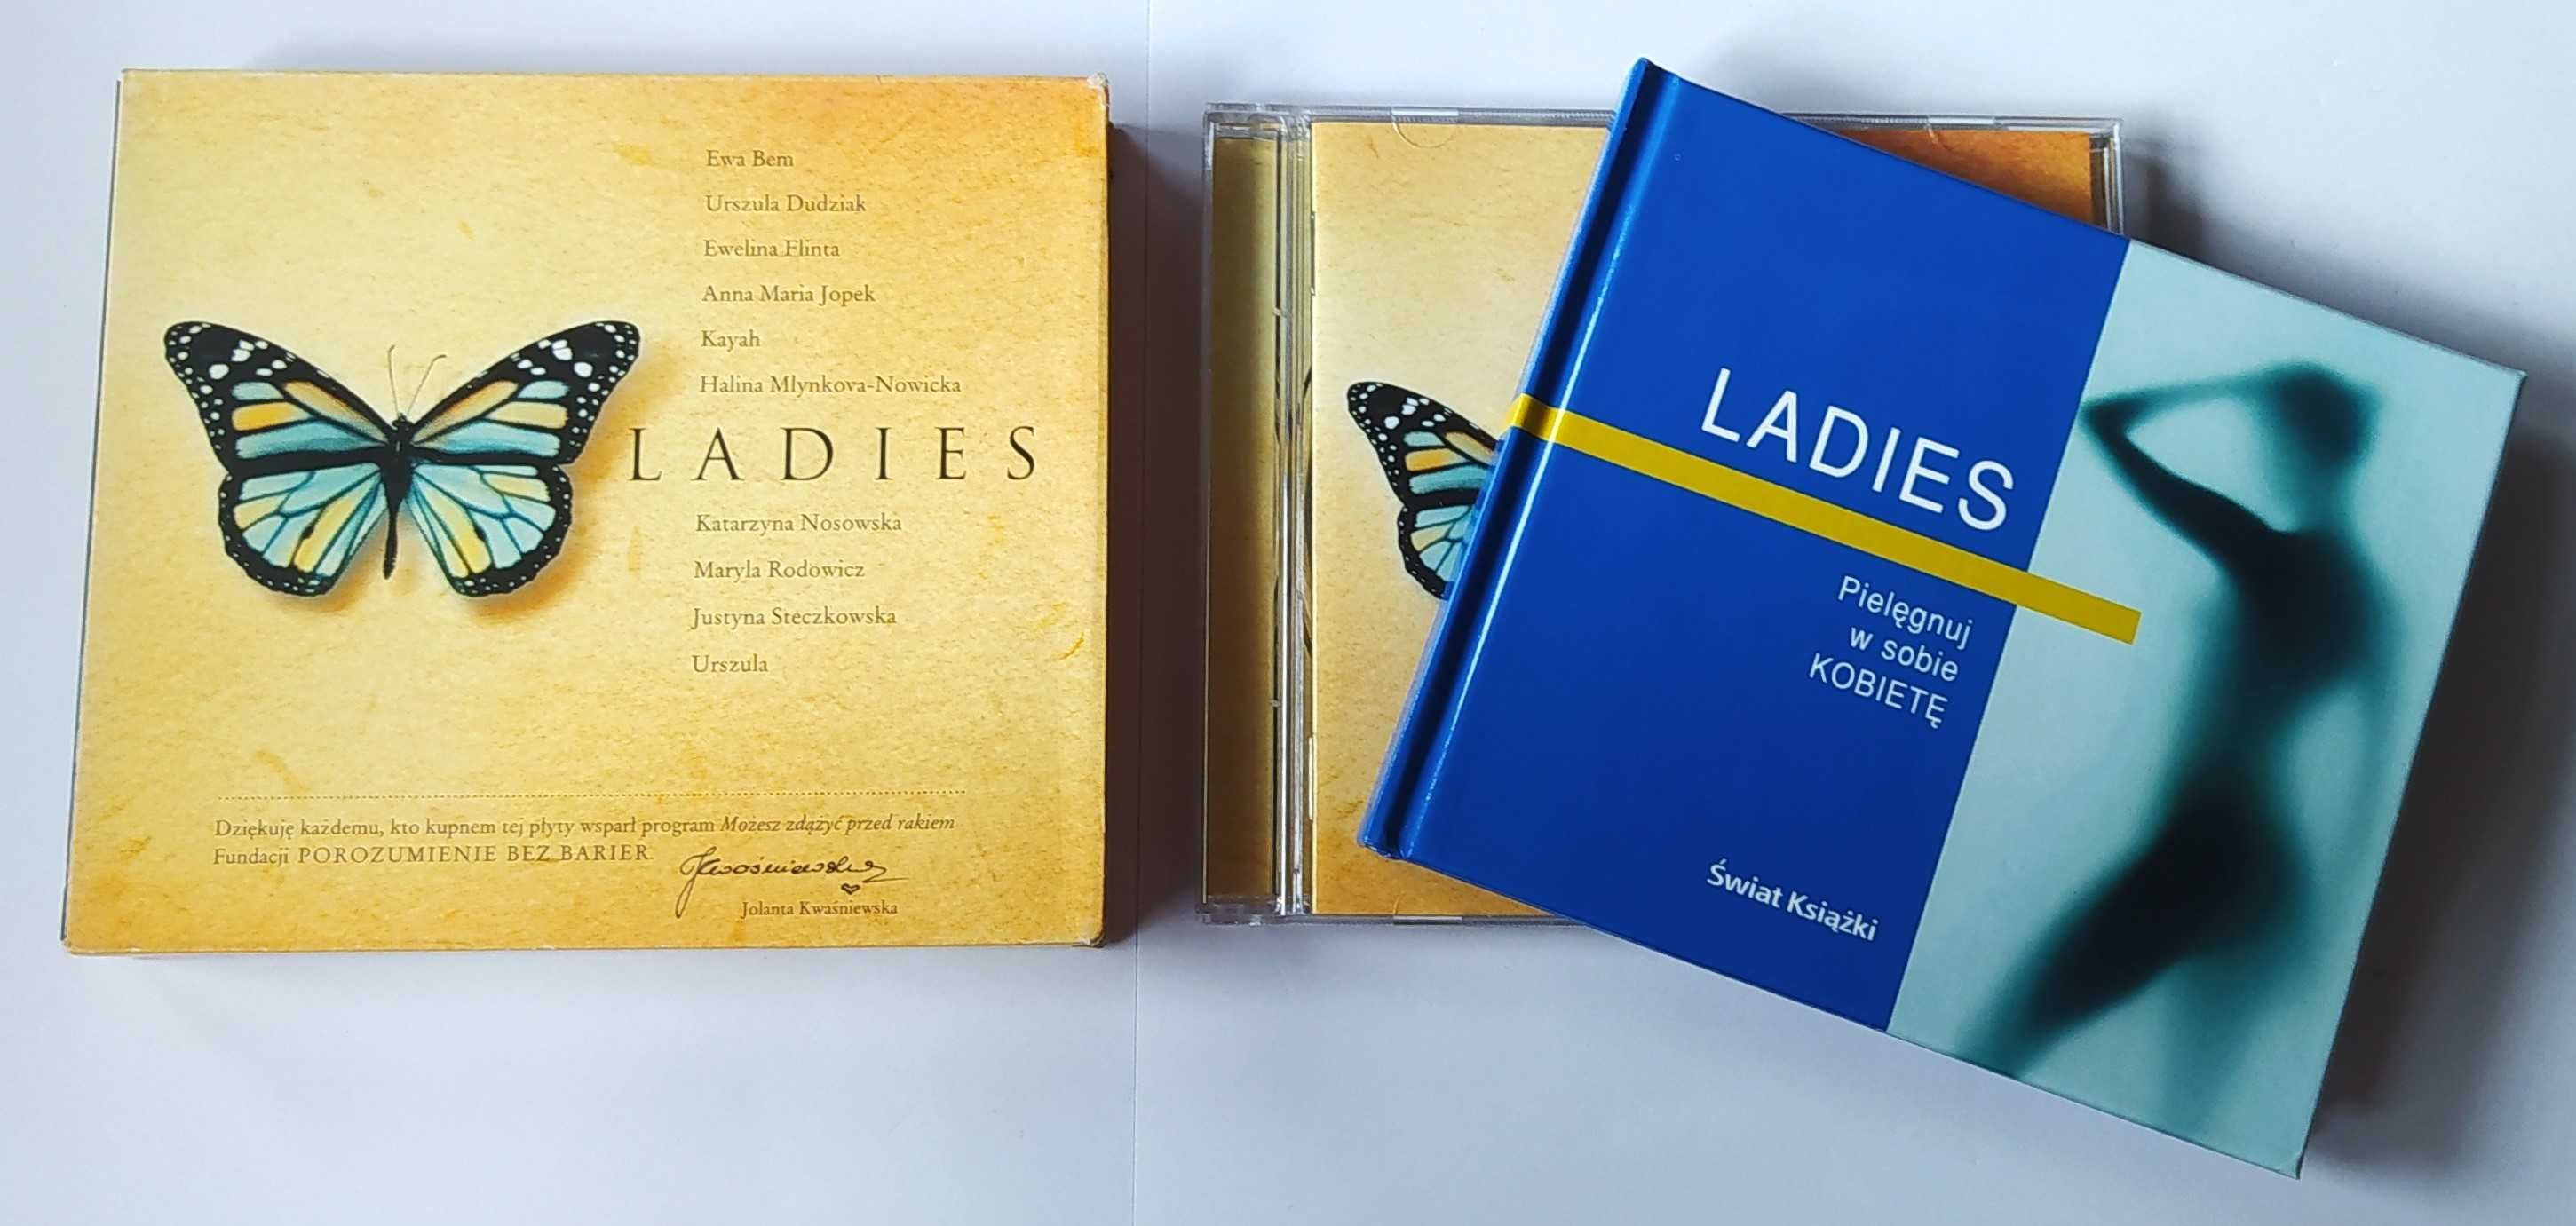 Ladies CD Various